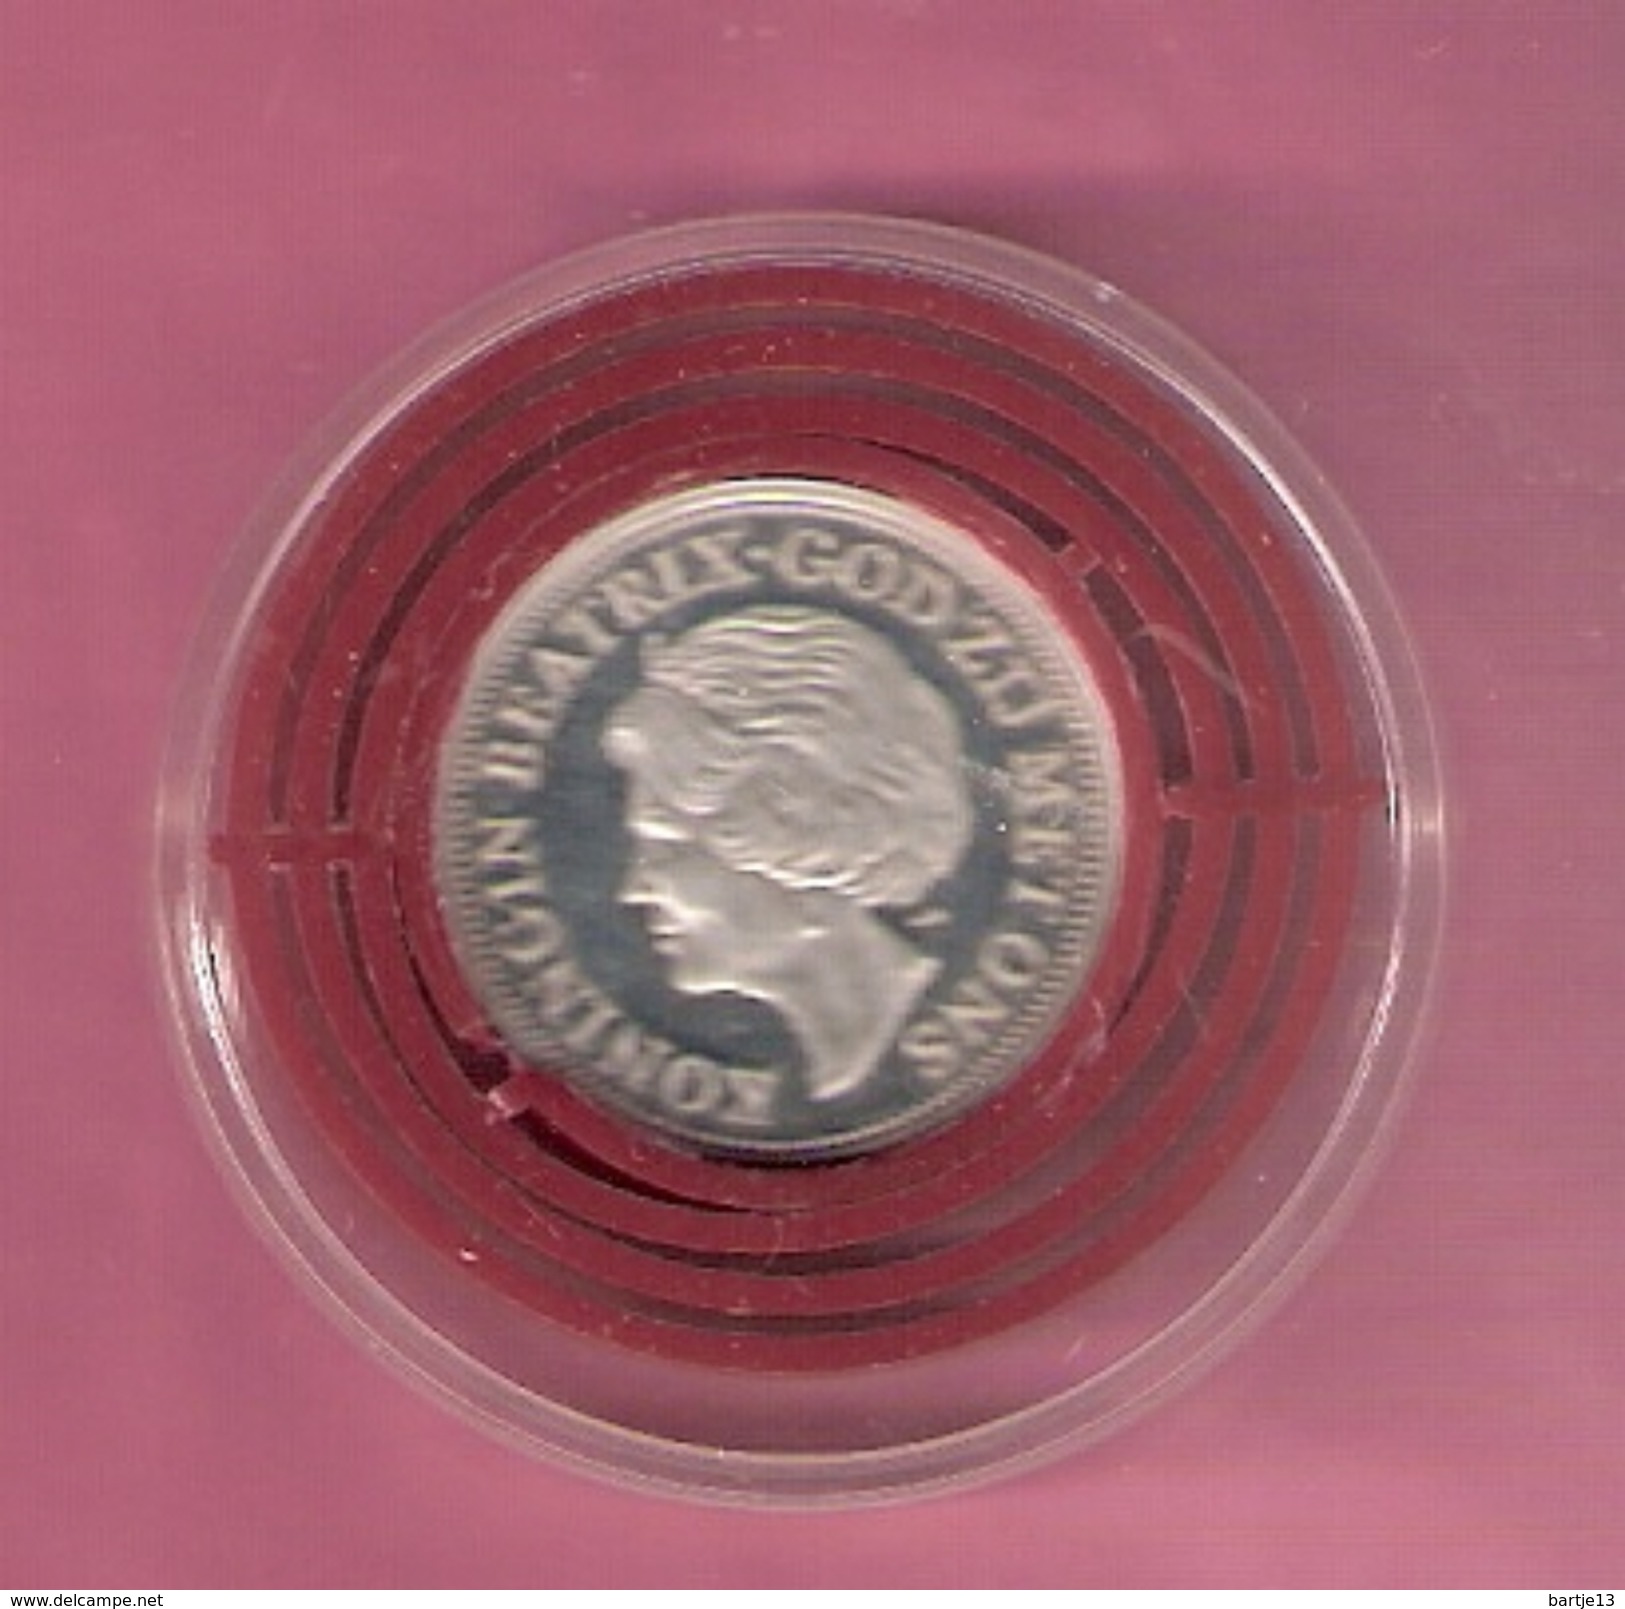 NEDERLAND SILVER MEDAL 1990 BEATRIX 10 YEAR QUEEN - Monedas Elongadas (elongated Coins)